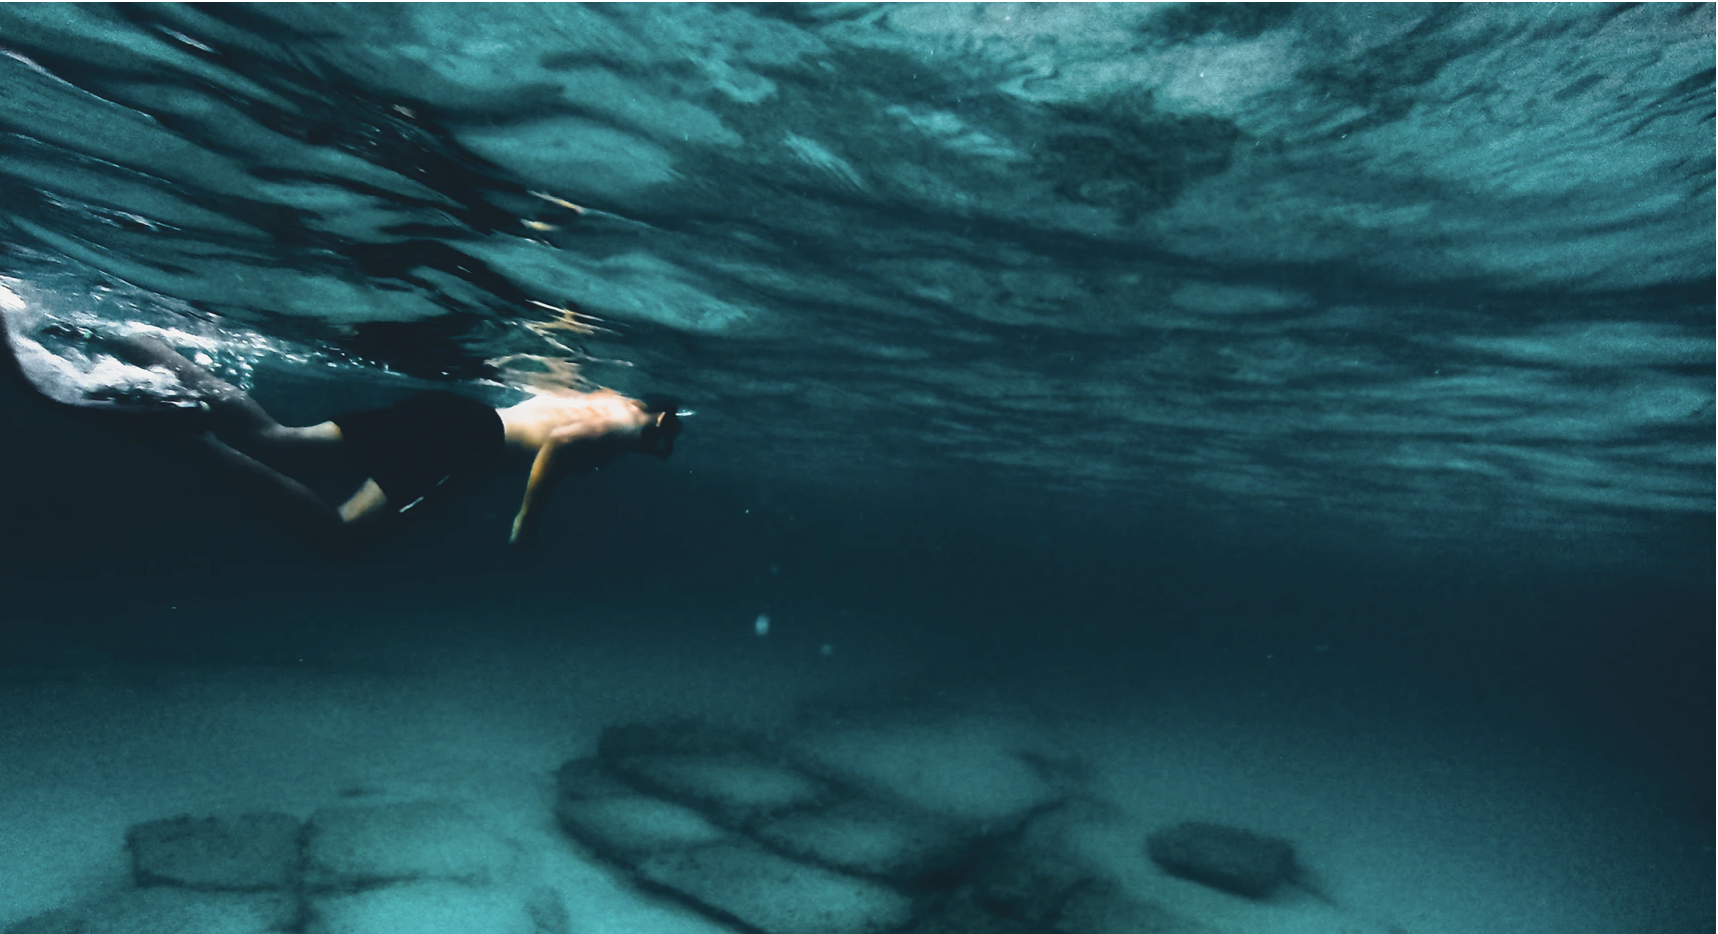 استكشف هواية الغوص تحت الماء